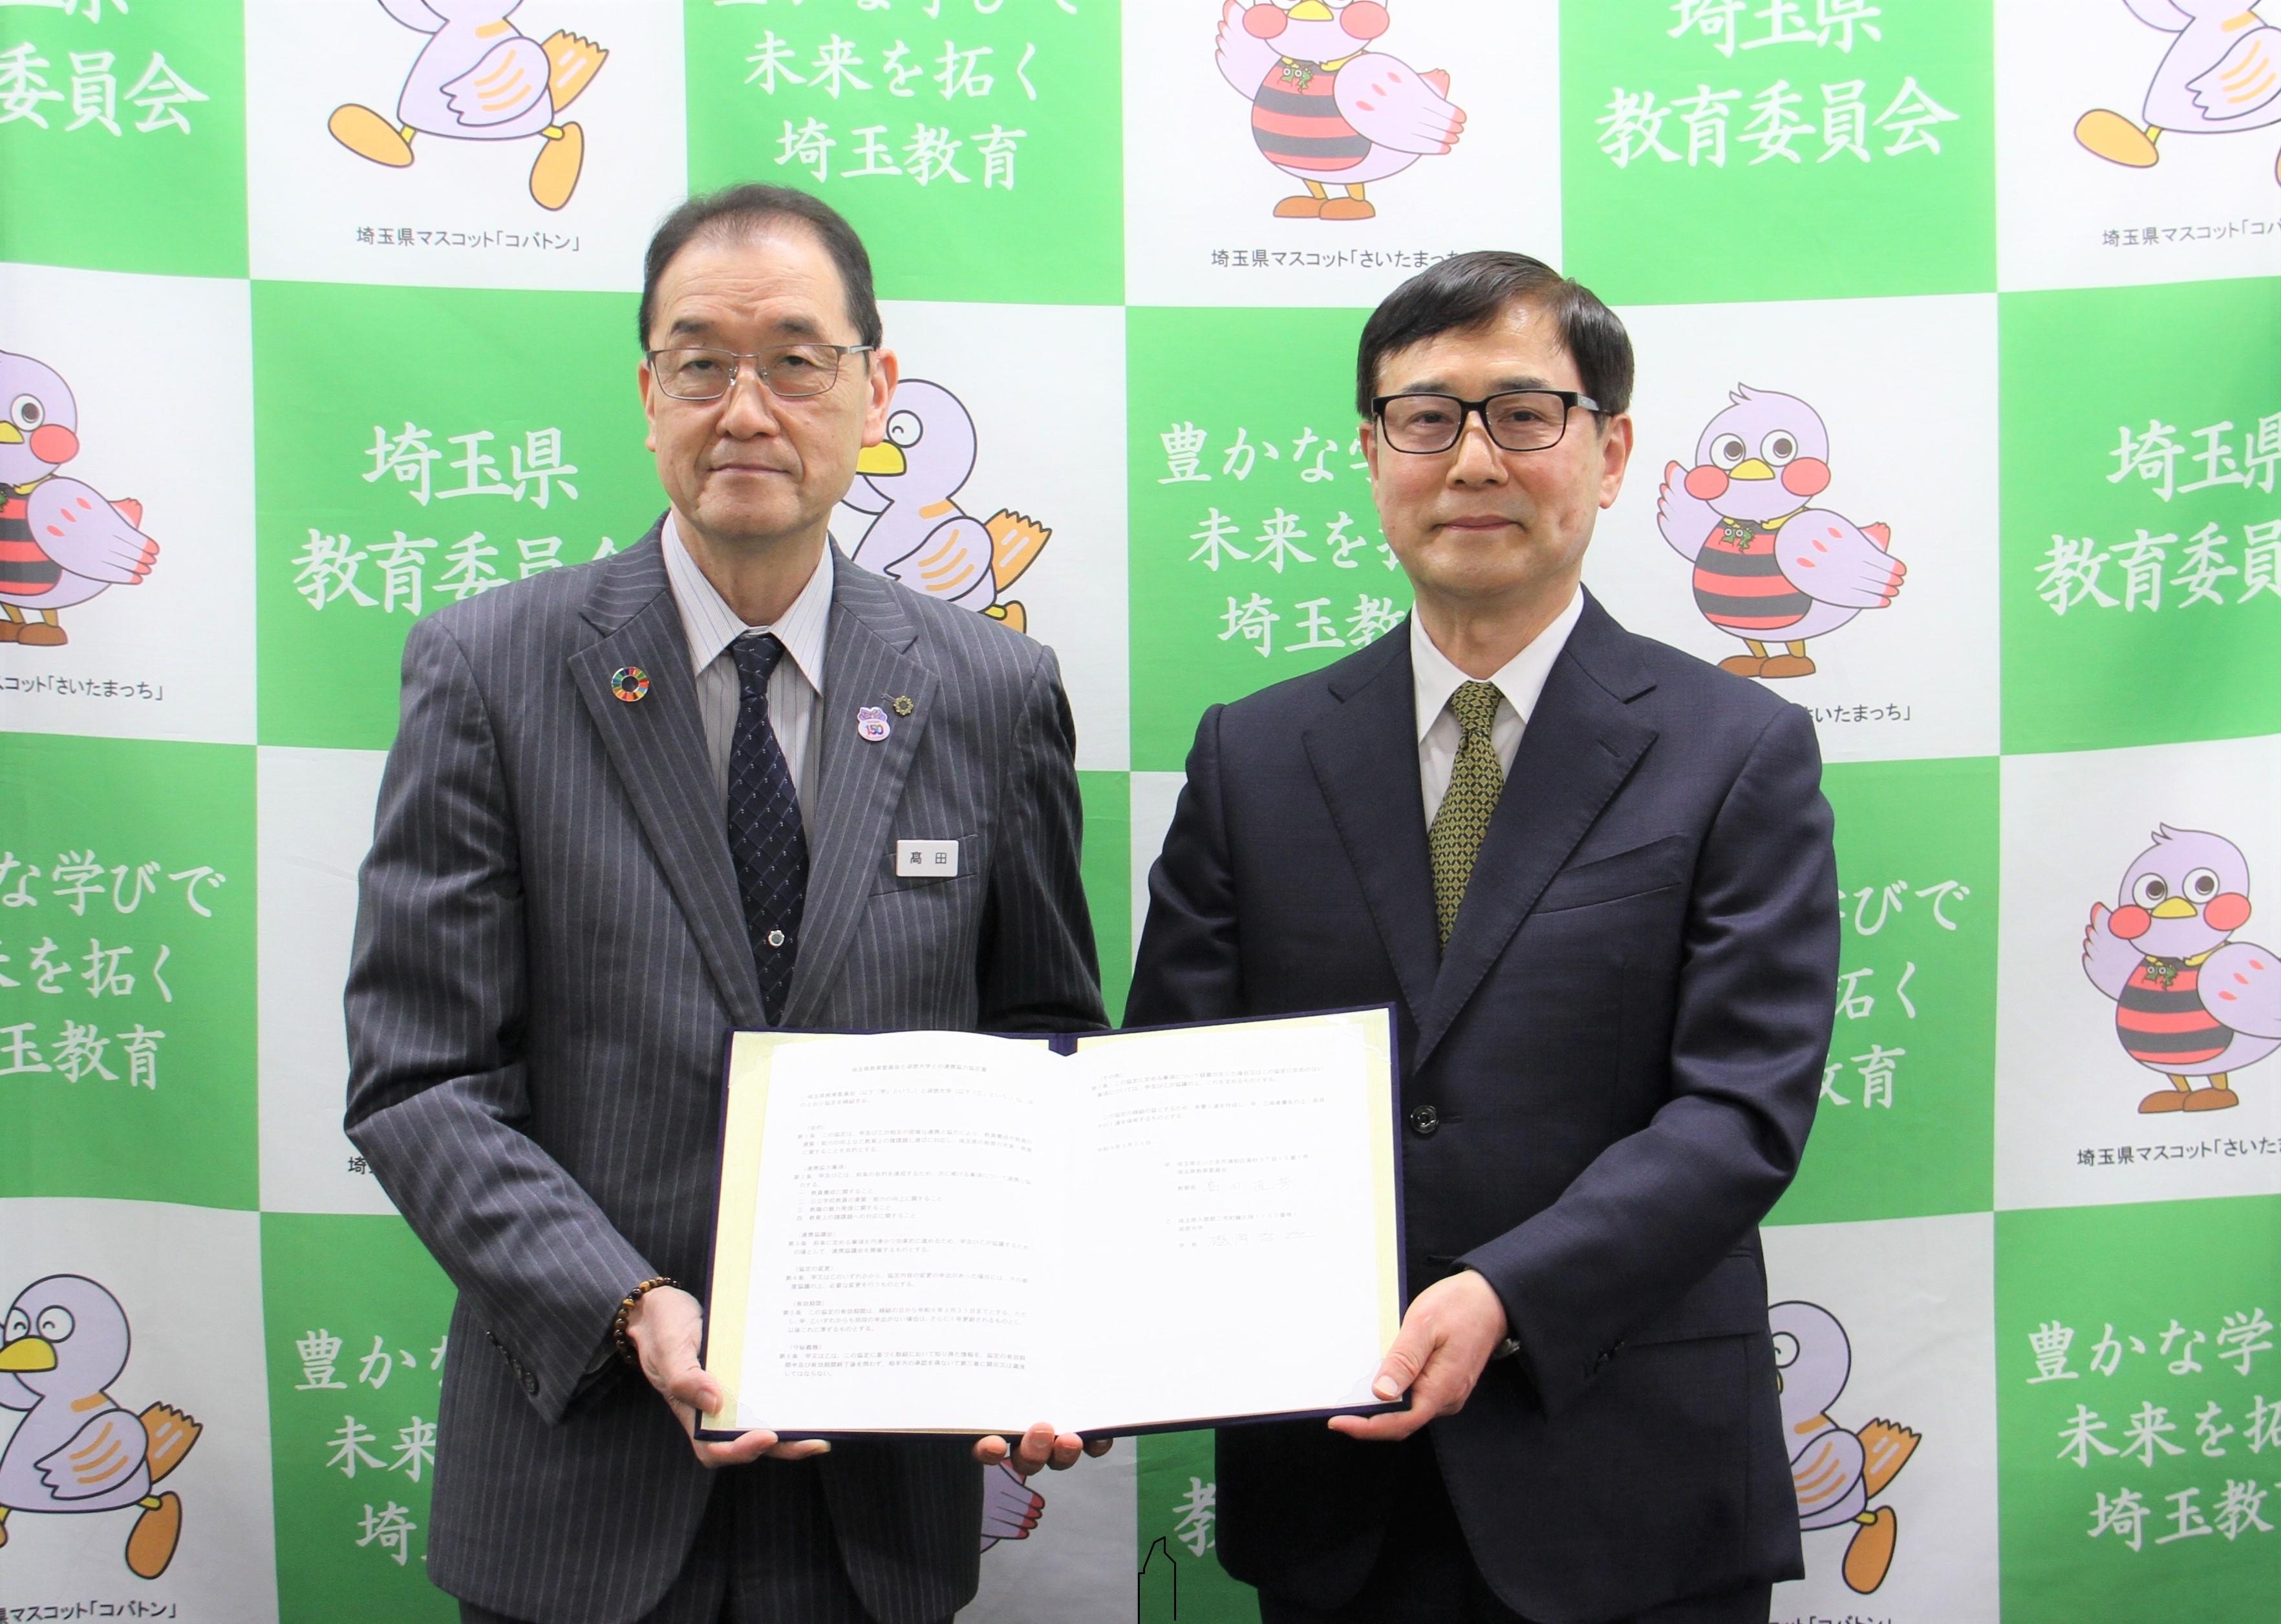 淑徳大学は埼玉県教育委員会との連携協力協定を締結しました